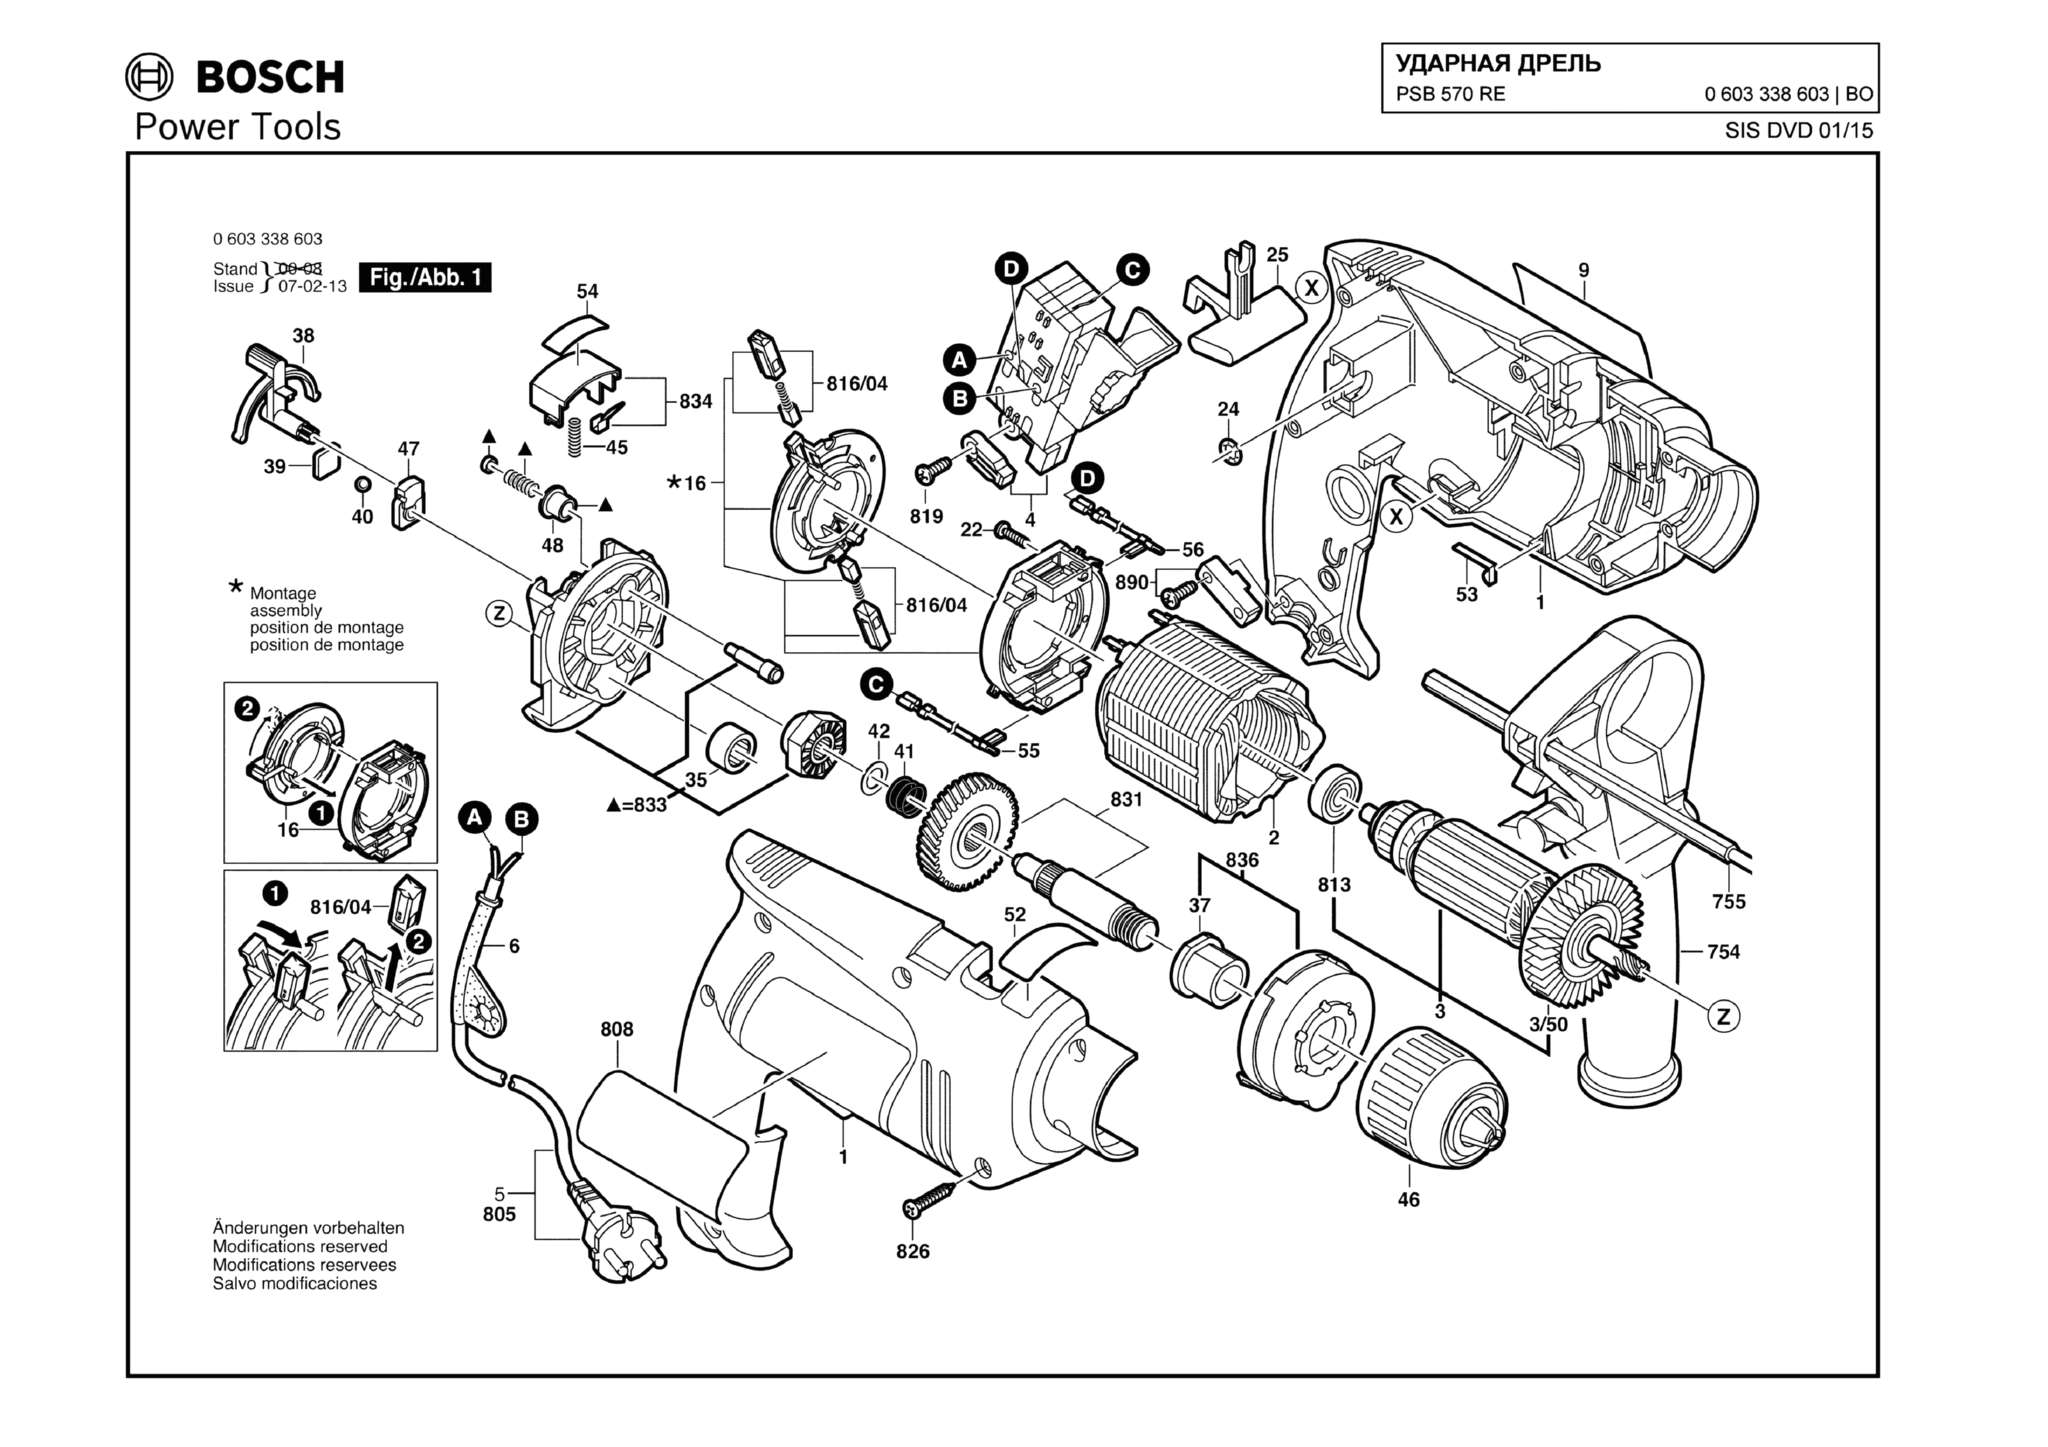 Запчасти, схема и деталировка Bosch PSB 570 RE (ТИП 0603338603)